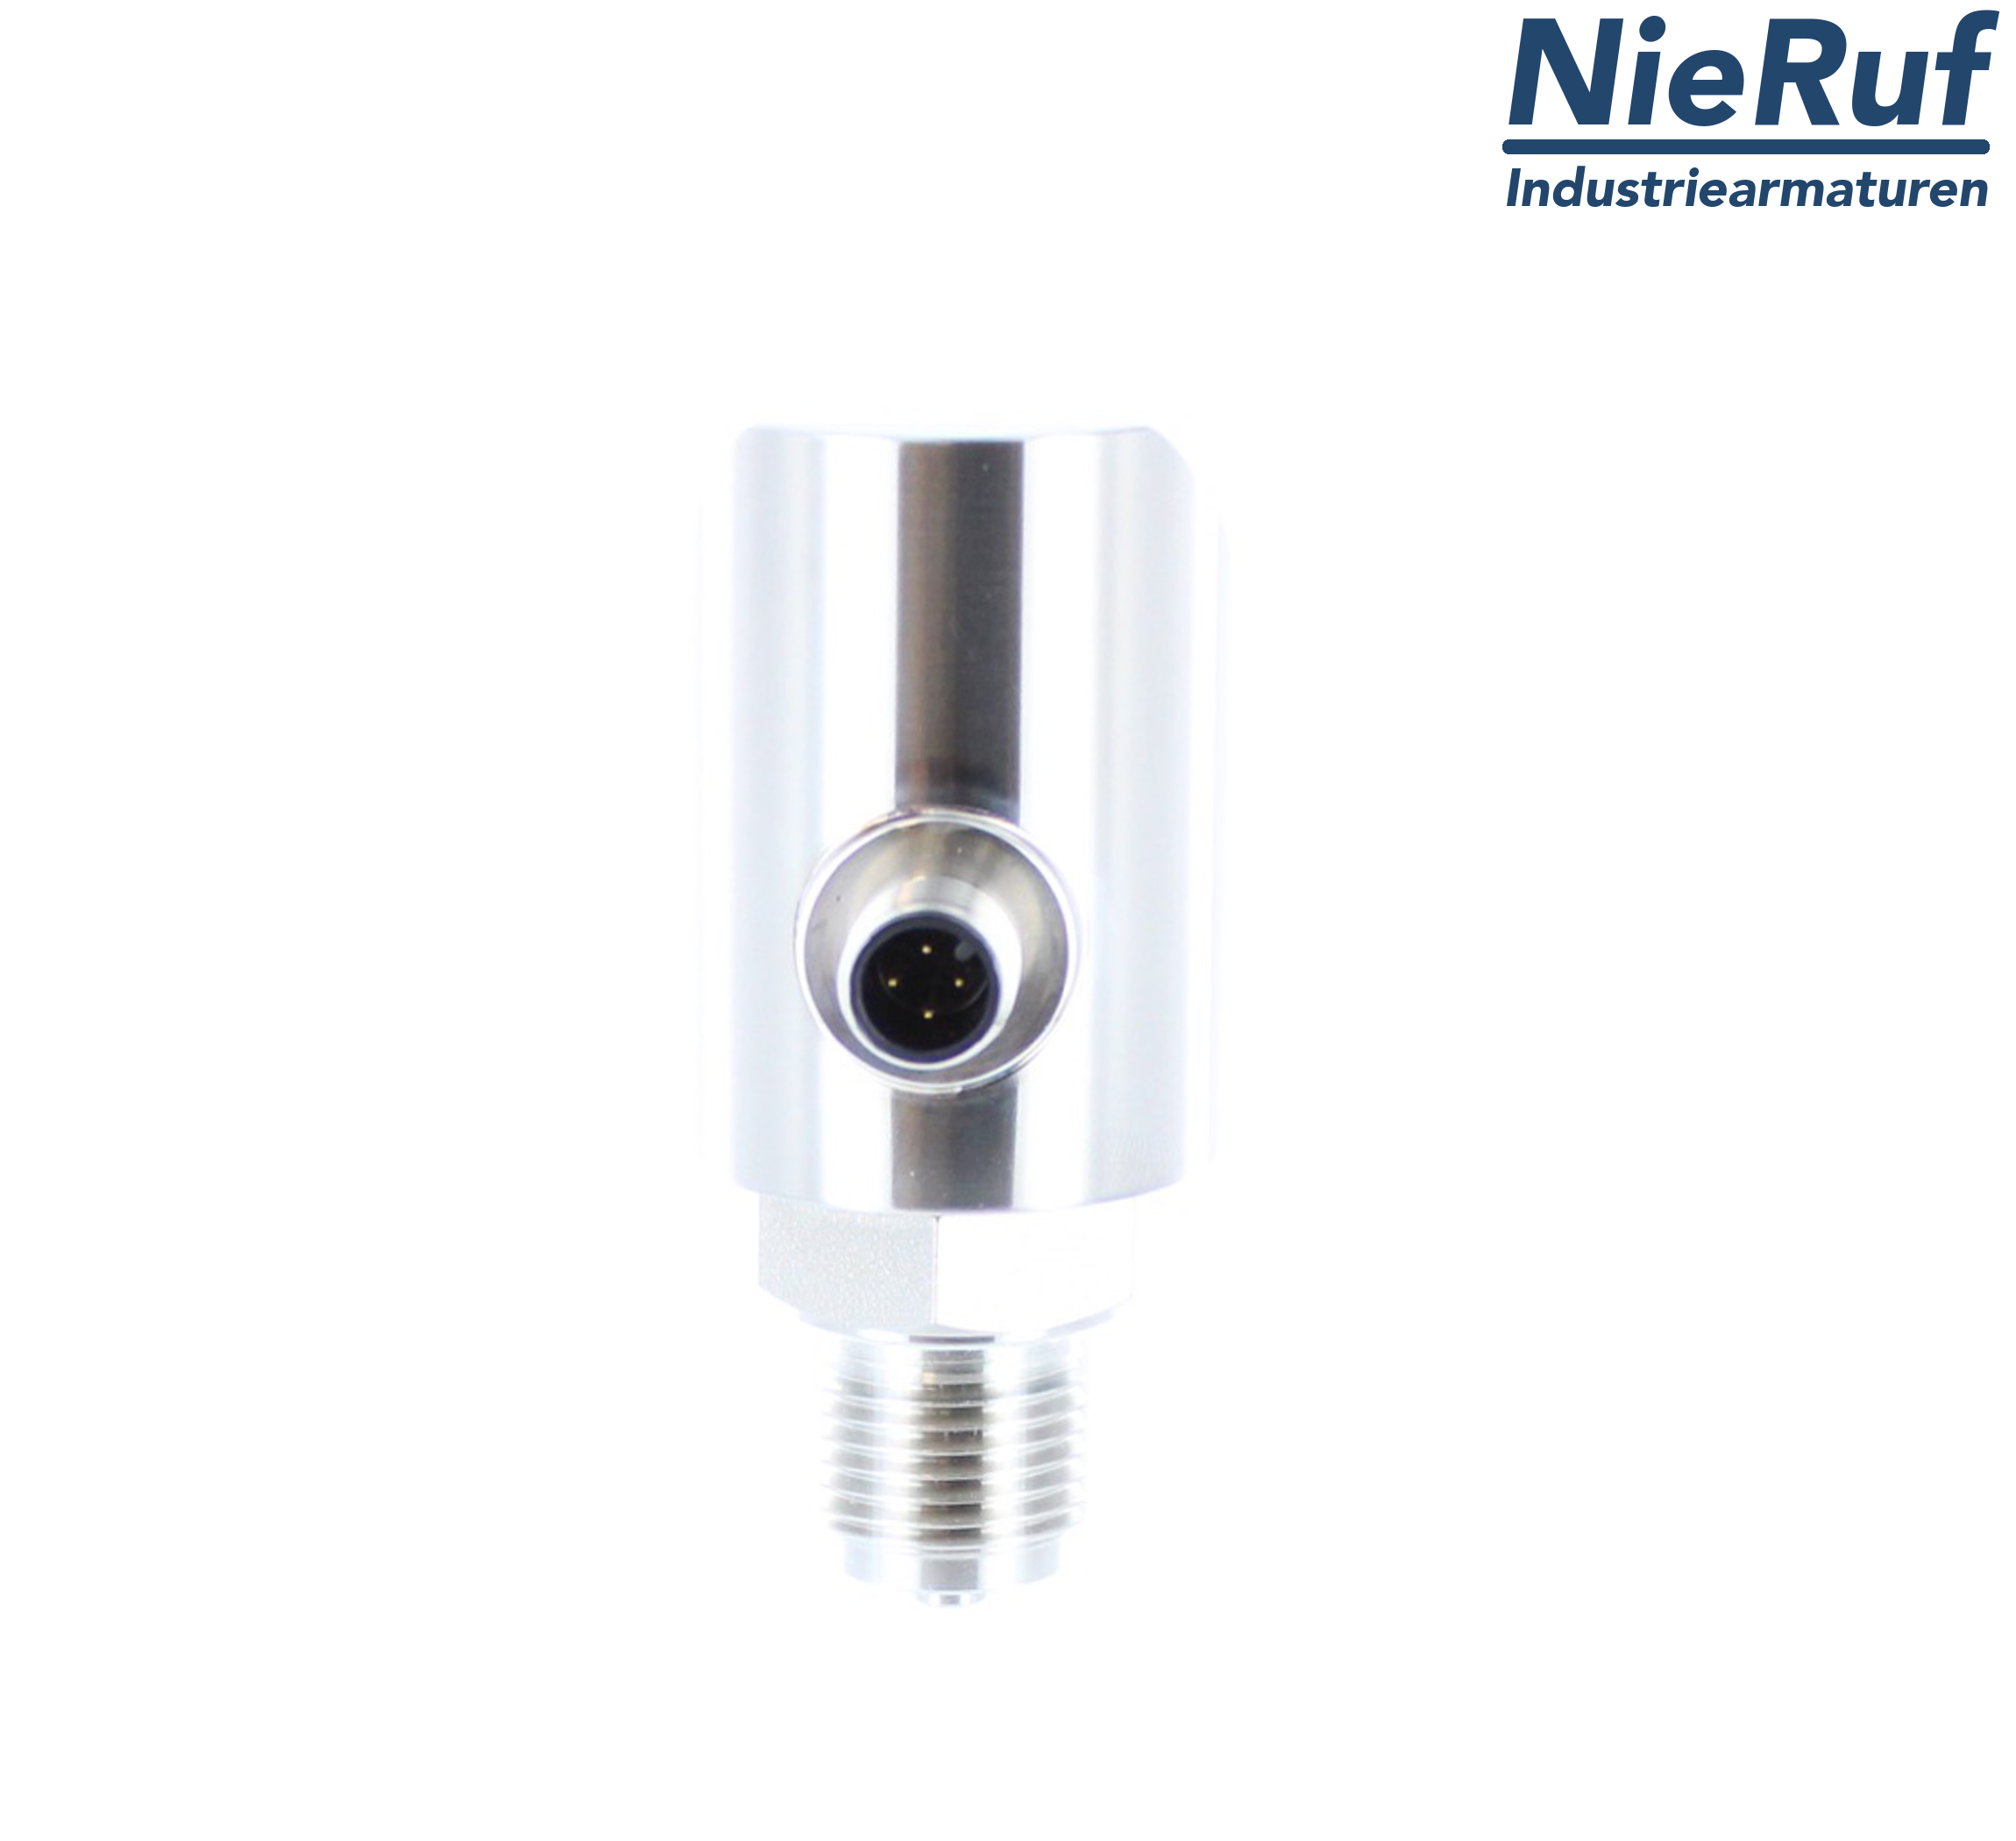 digital pressure sensor G 1/2" B 5-wire: 2xPNP, 1x4 - 20mA FPM 0,0 - 6,0 bar